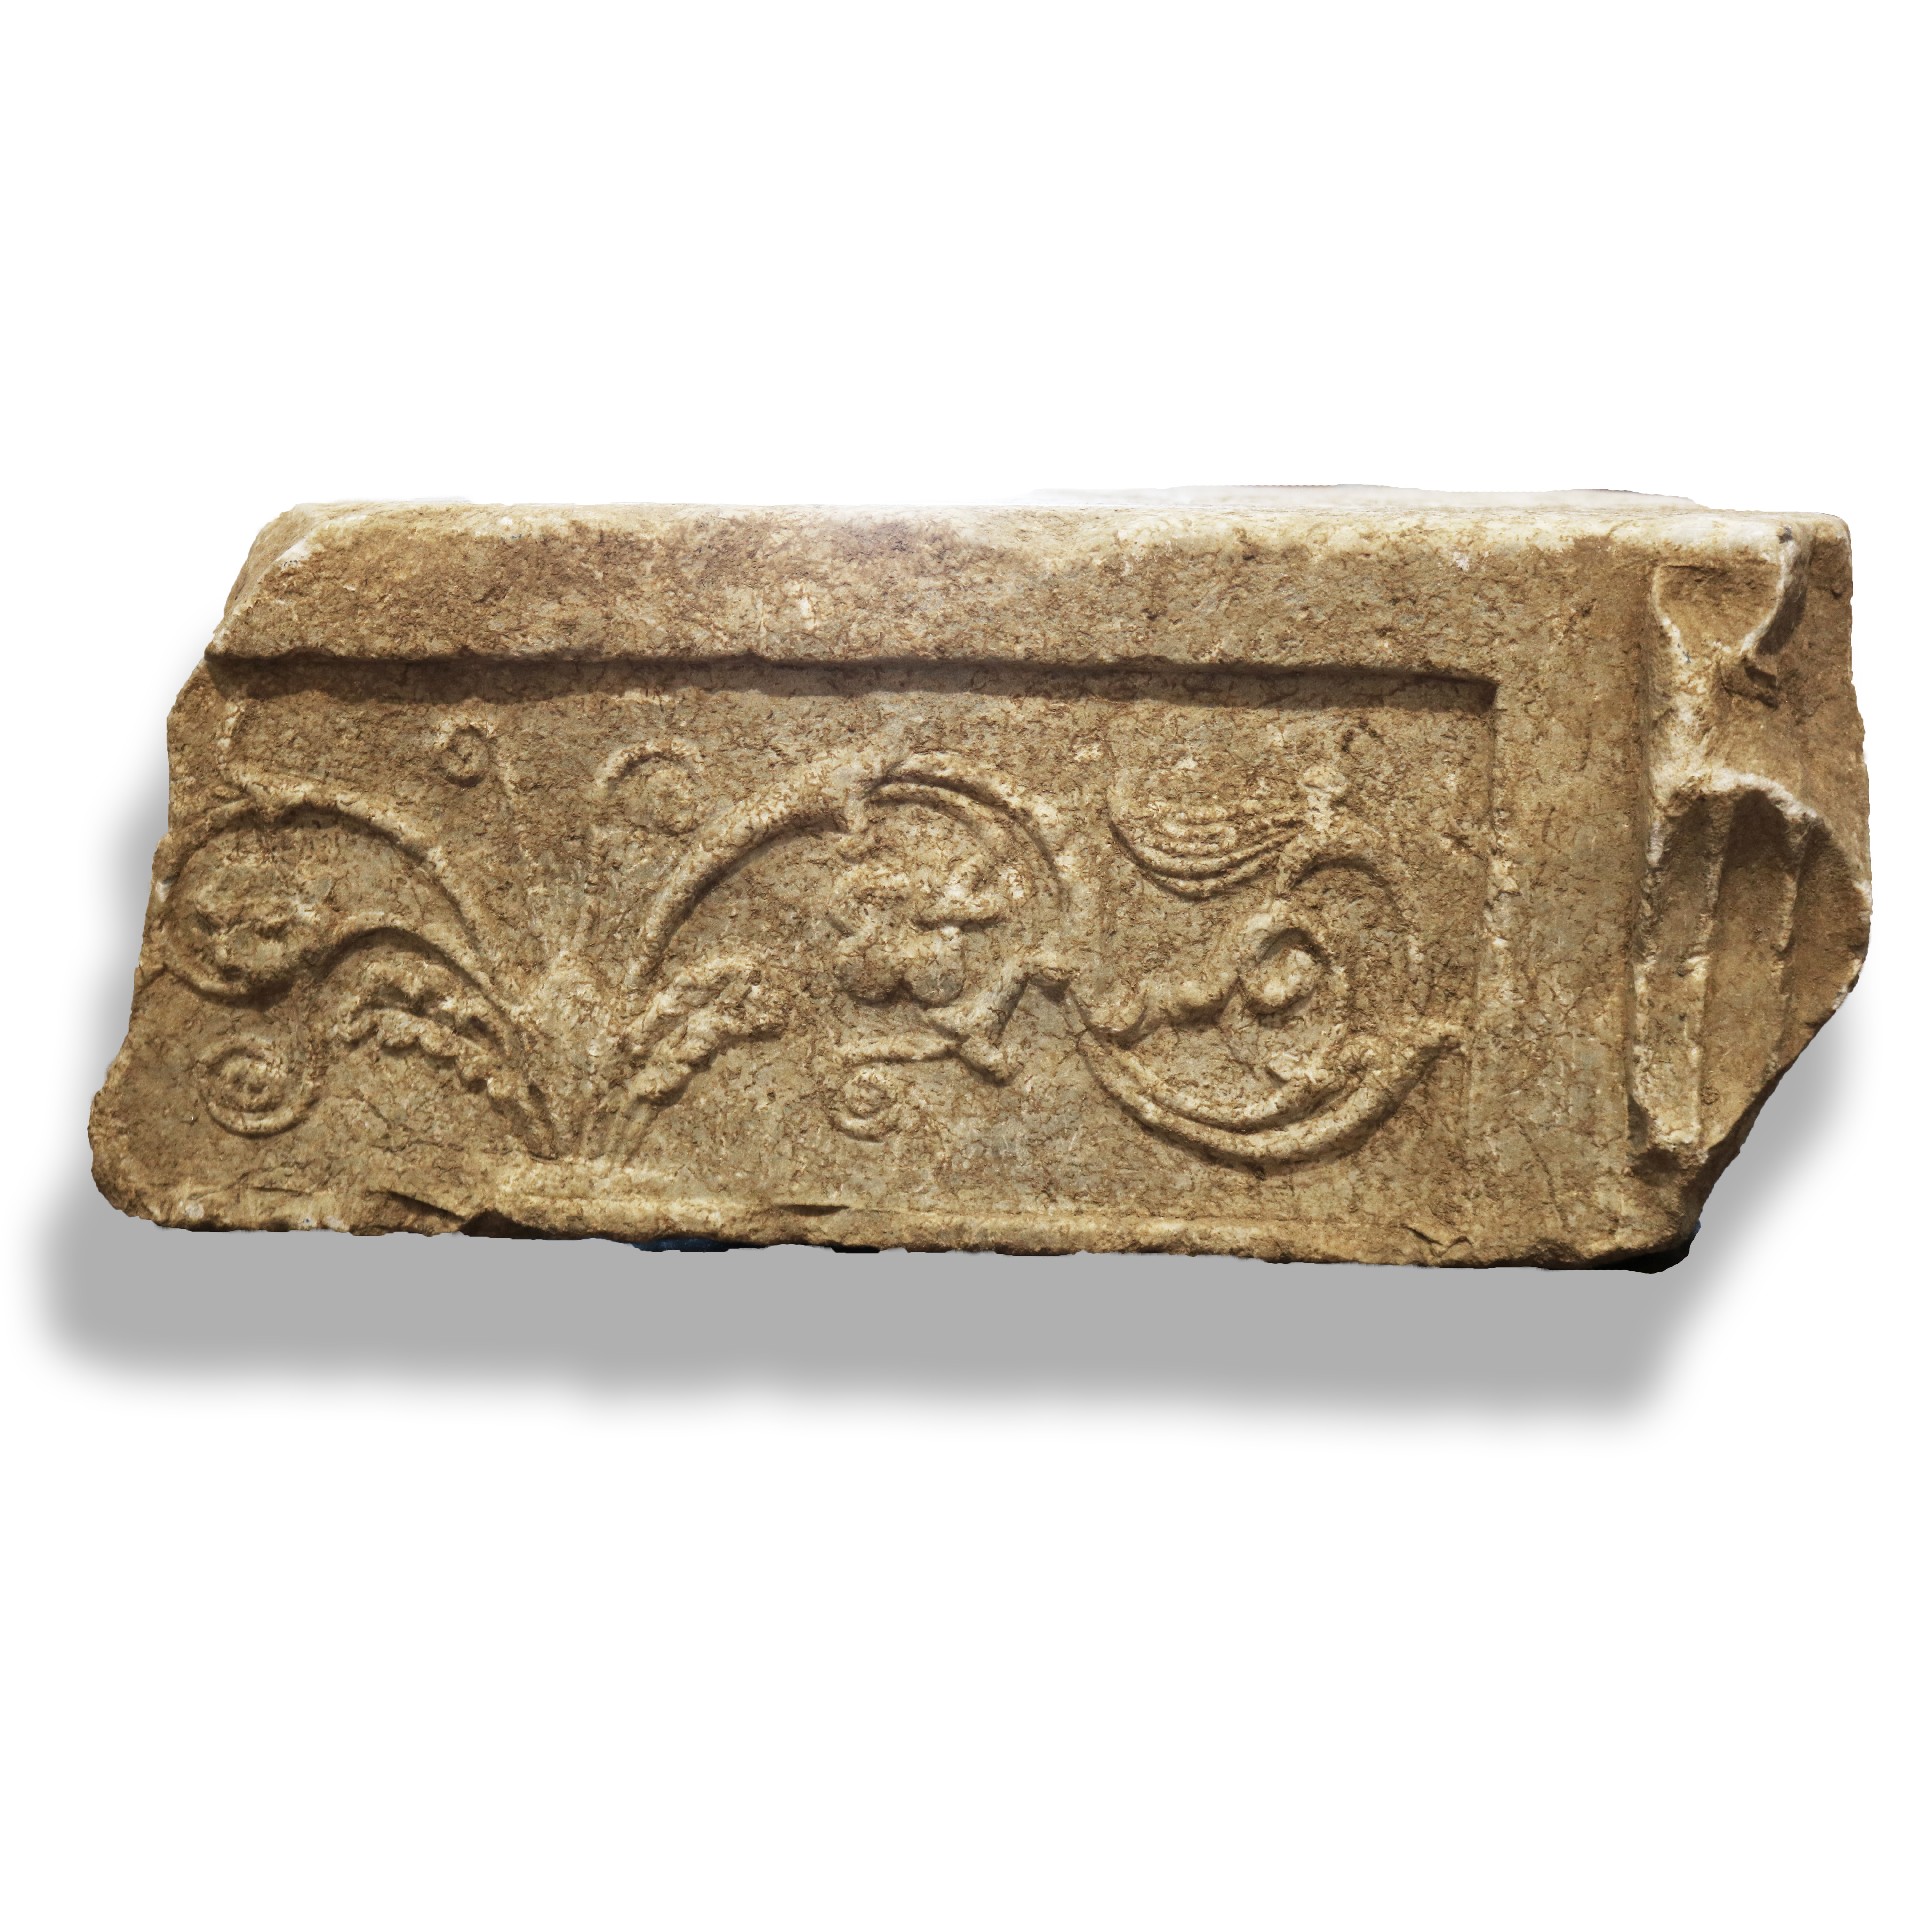 Frammento di coperchio in marmo. Epoca I - II sec. D.c. - Elementi Architettonici - Architettura - Prodotti - Antichità Fiorillo